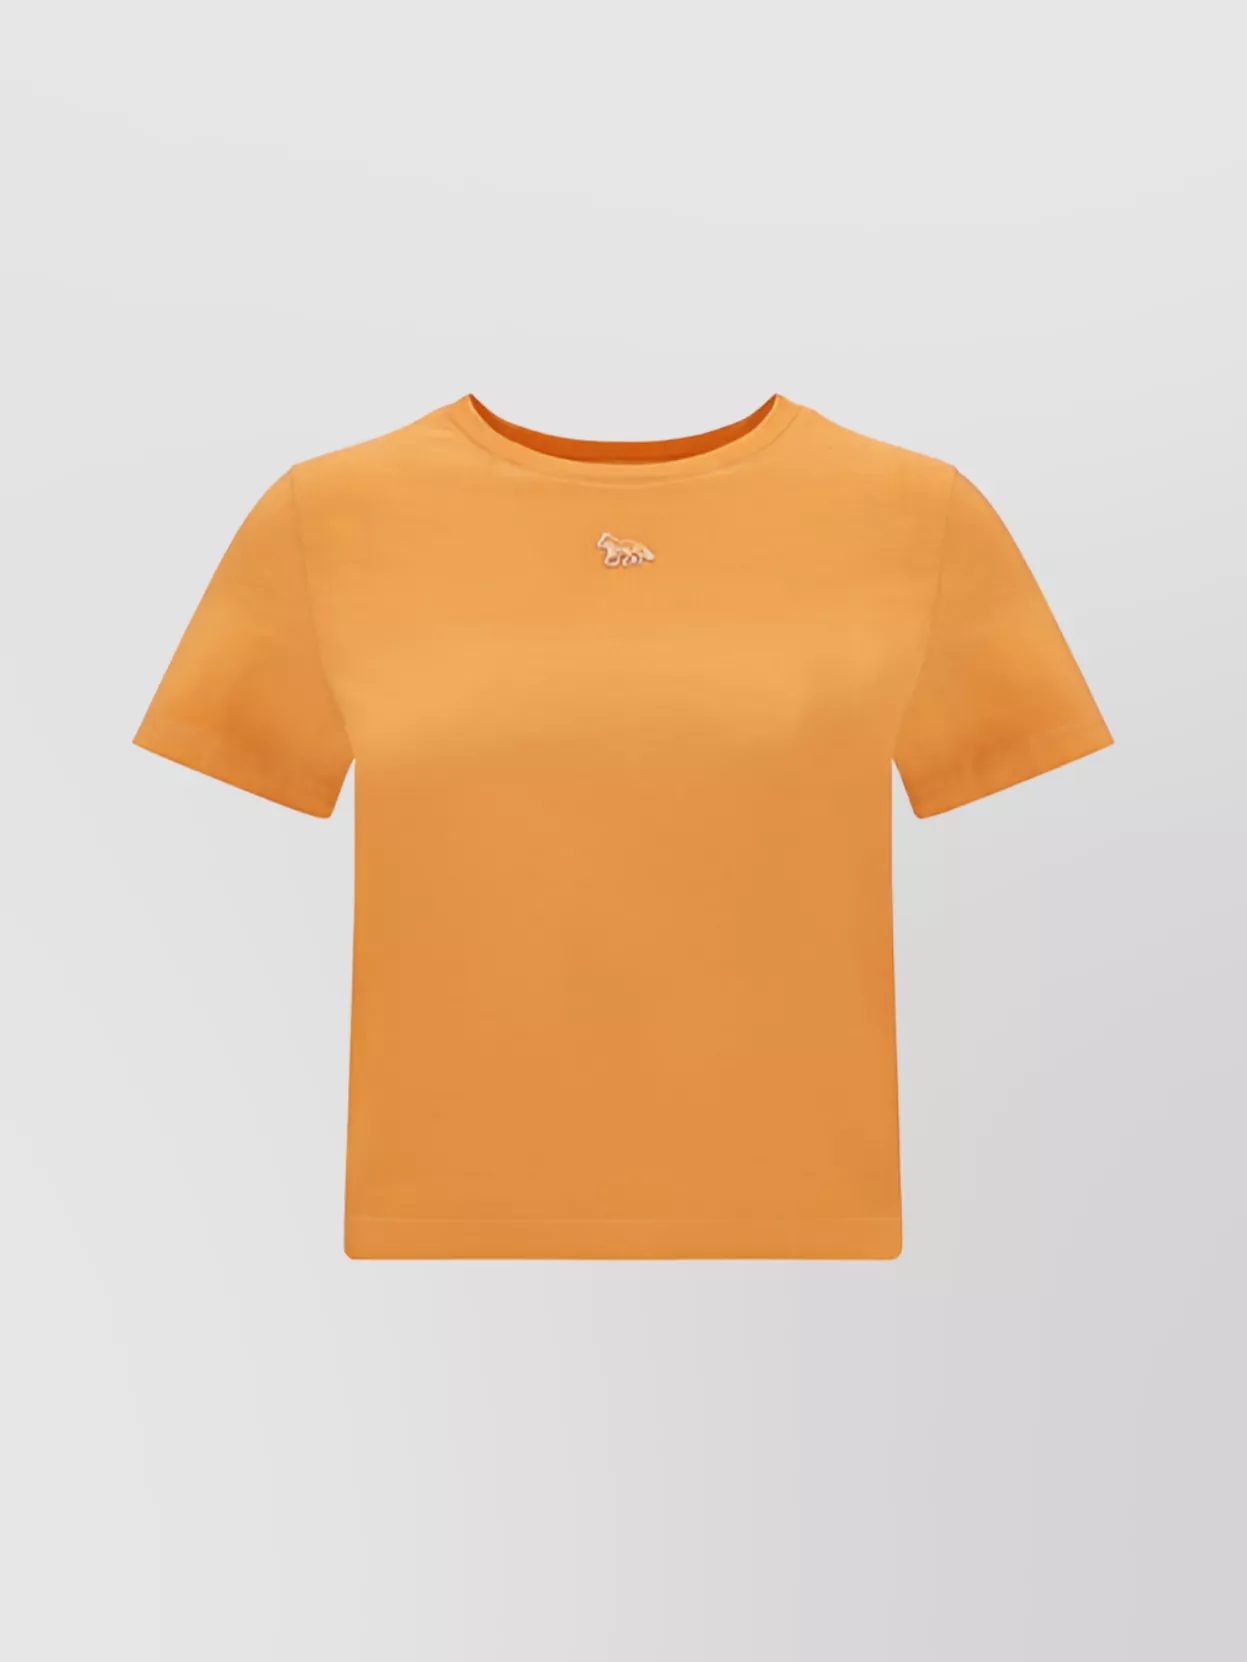 Maison Kitsuné Cotton Crew Neck T-shirt In Orange